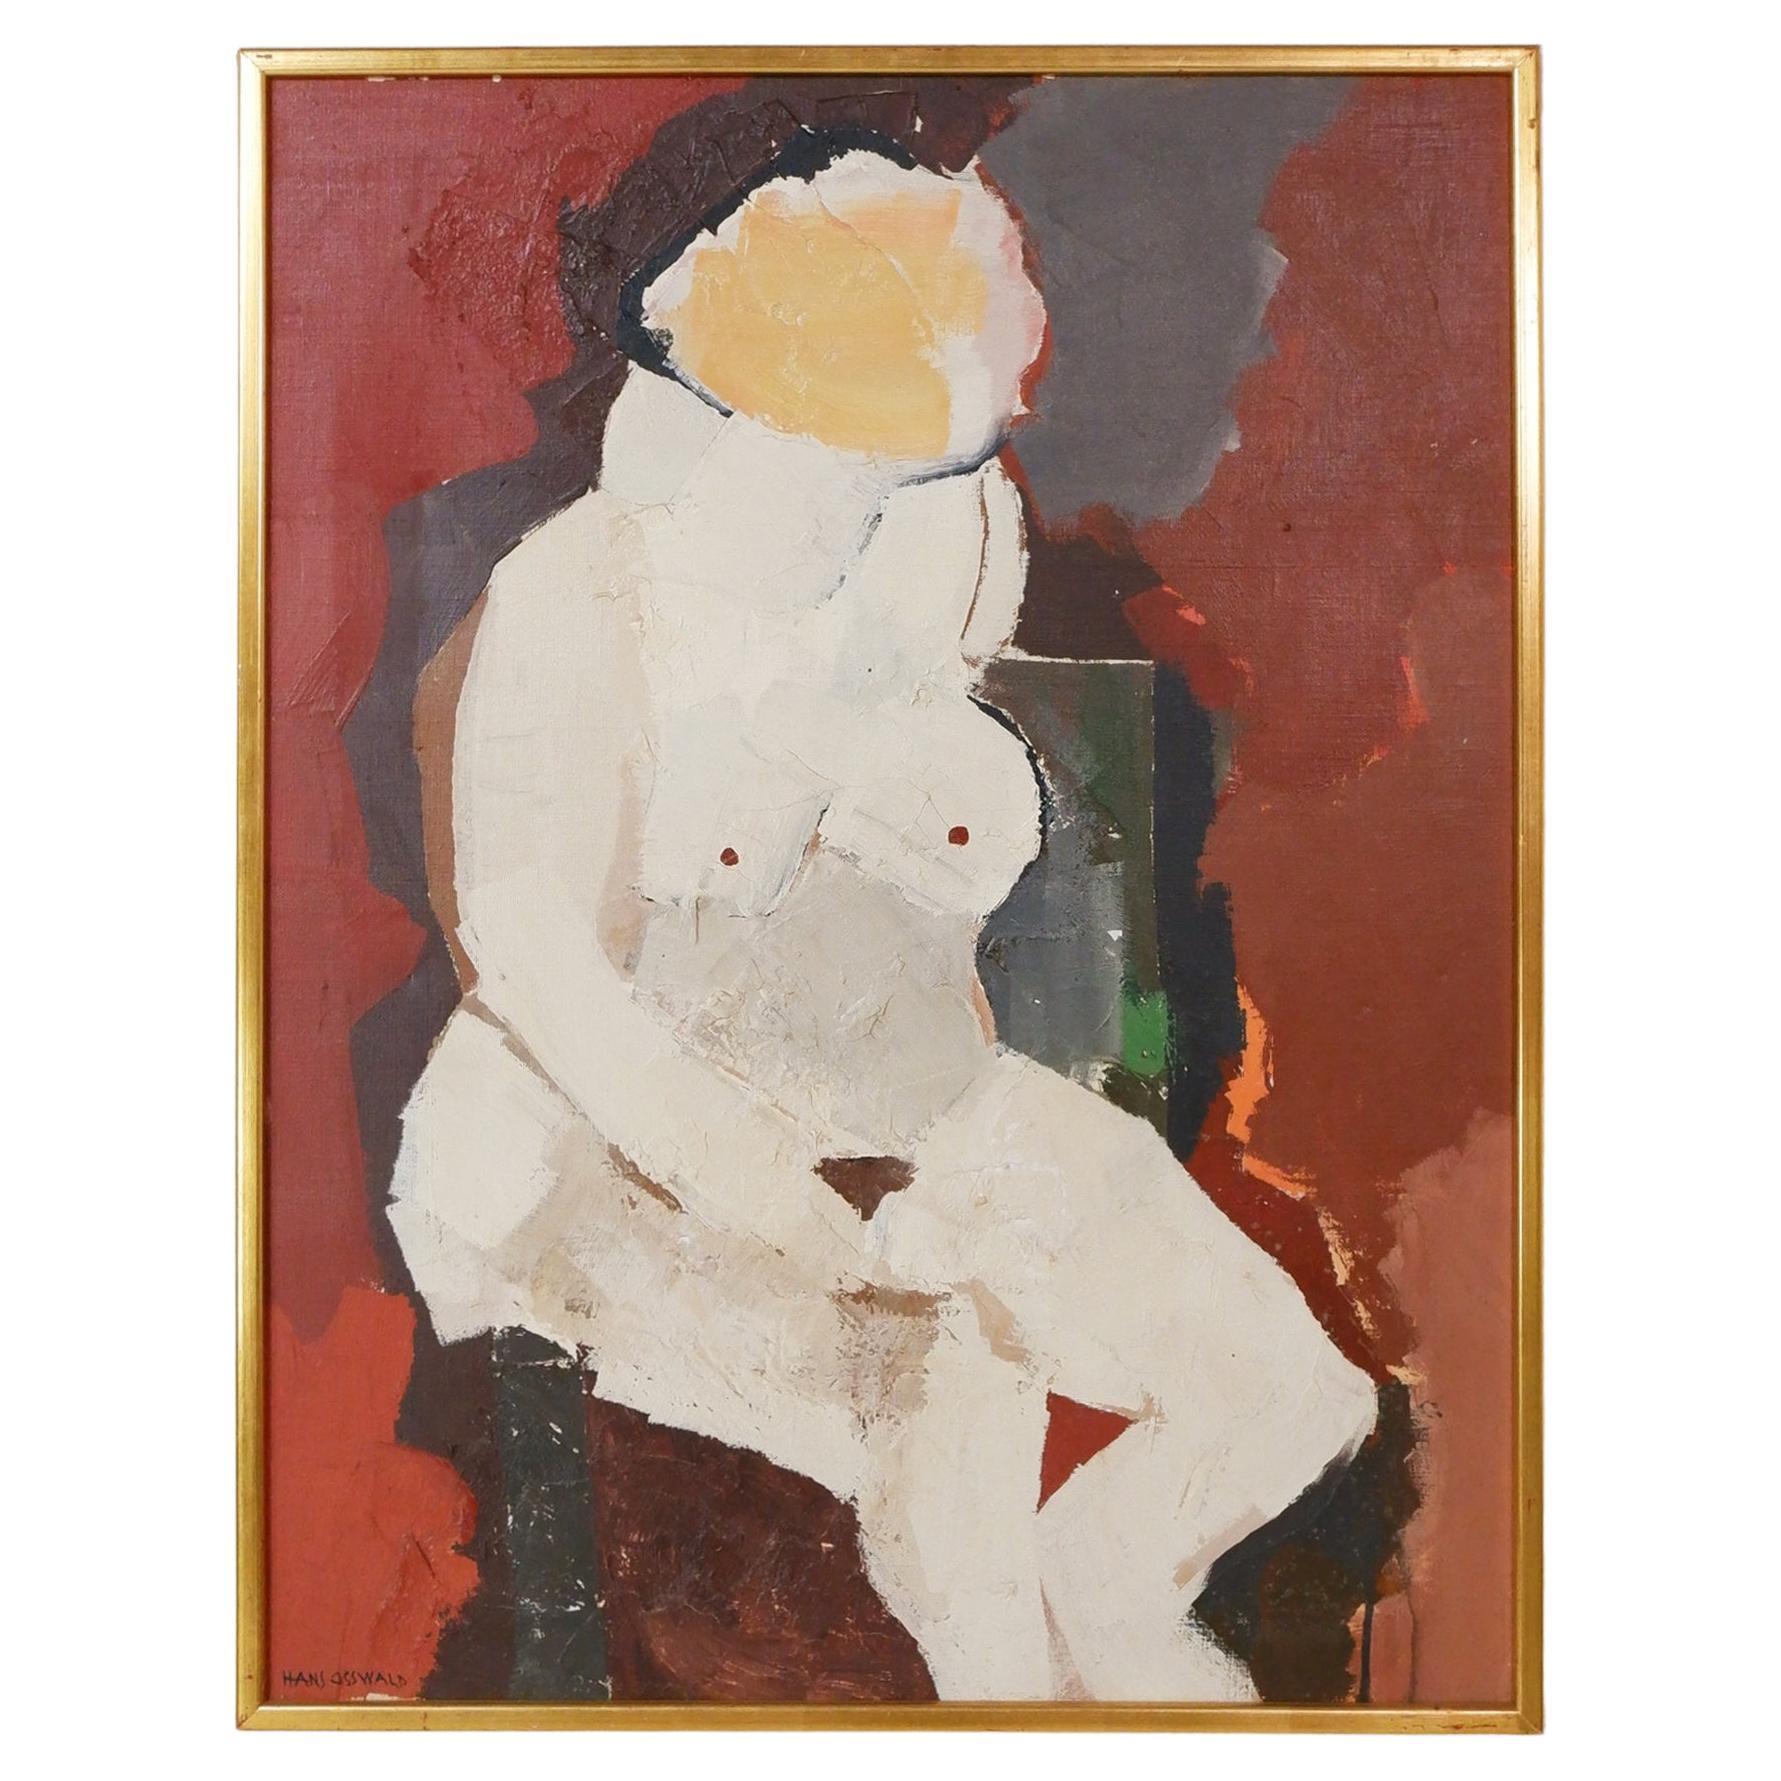  Femme assise, huile sur toile, Hans Osswald (1919-1983)